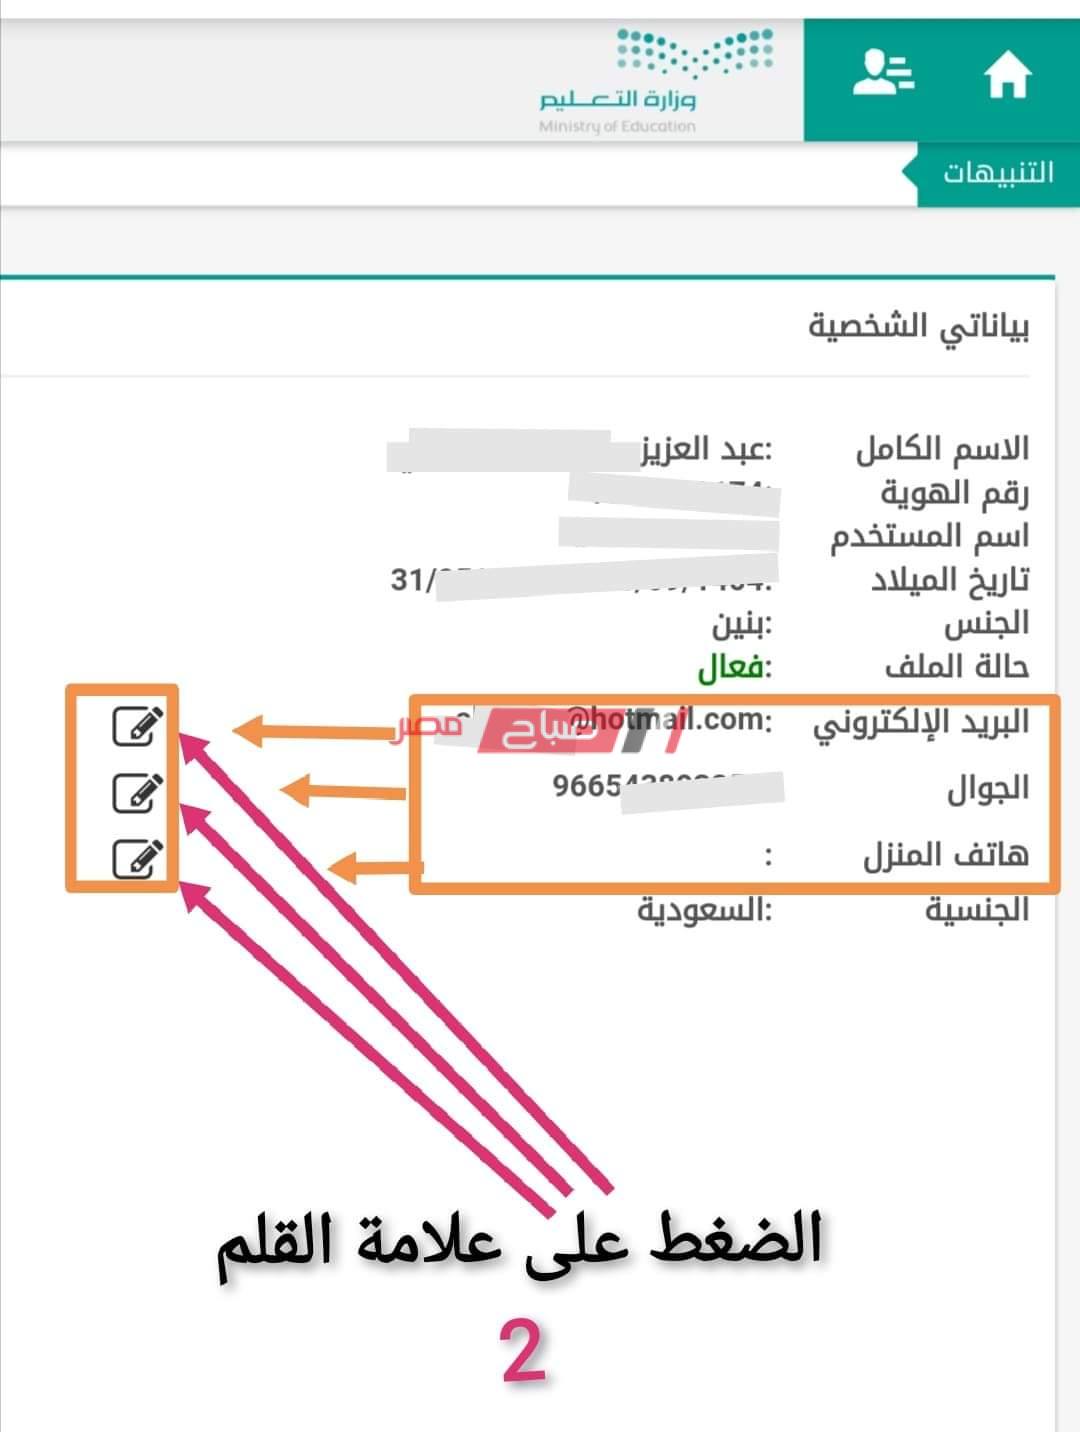 بالصور طريقة تحديث الإيميل ورقم الجوال لأولياء الأمور في نظام نور صباح مصر